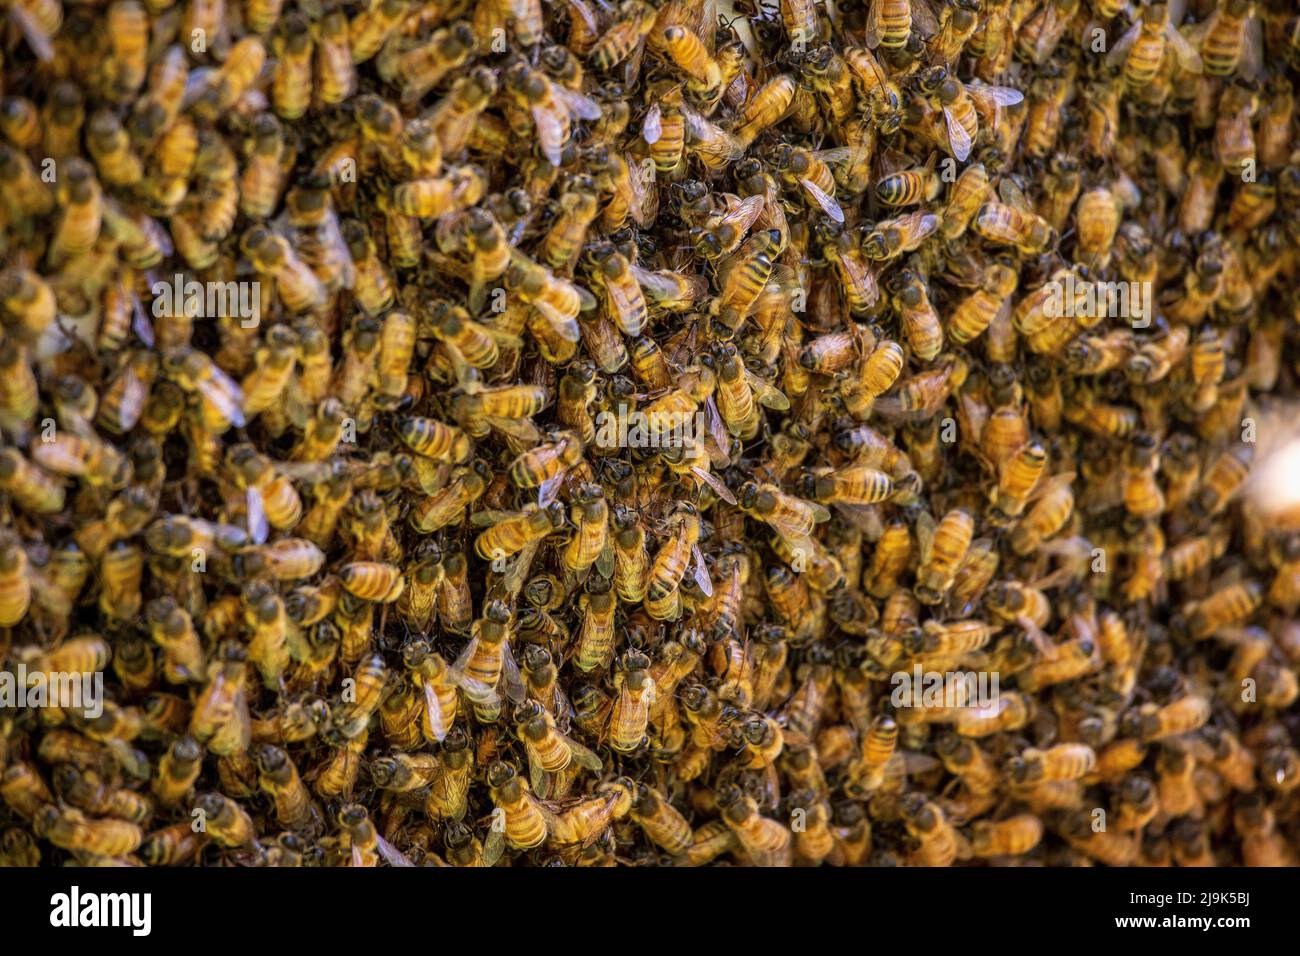 Full frame Ligurian Bees on hive Stock Photo